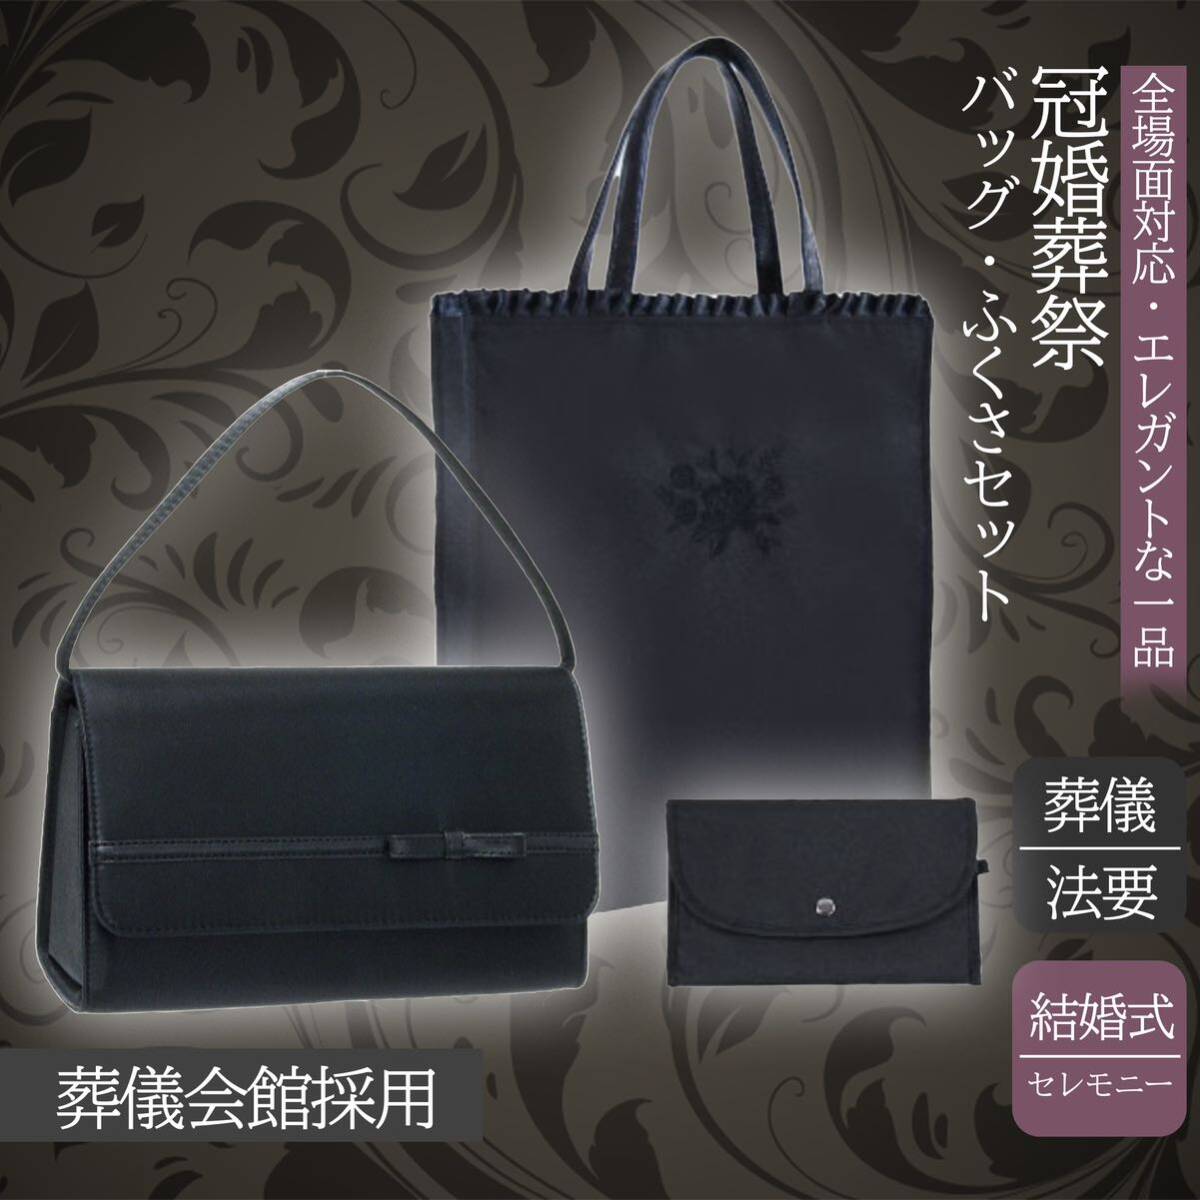  в тот же день рассылка выгода комплект праздничные обряды формальный сумка большая сумка fukusa 3 позиций комплект лента внутри карман . тип ручная сумочка церемония окончания 